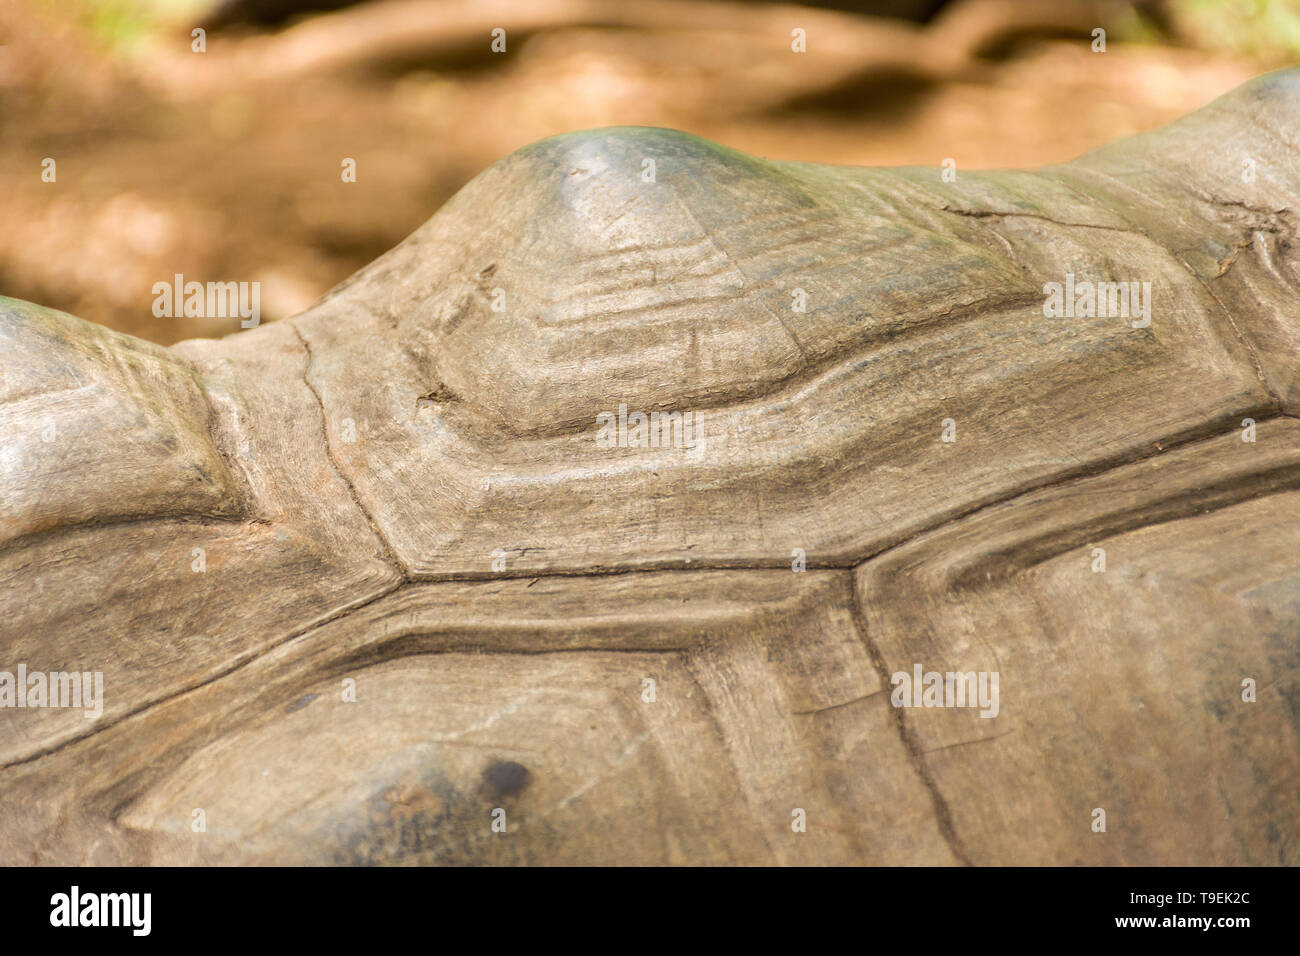 La tortuga gigante de Aldabra (Aldabrachelys gigantea) Detalle de shell Foto de stock